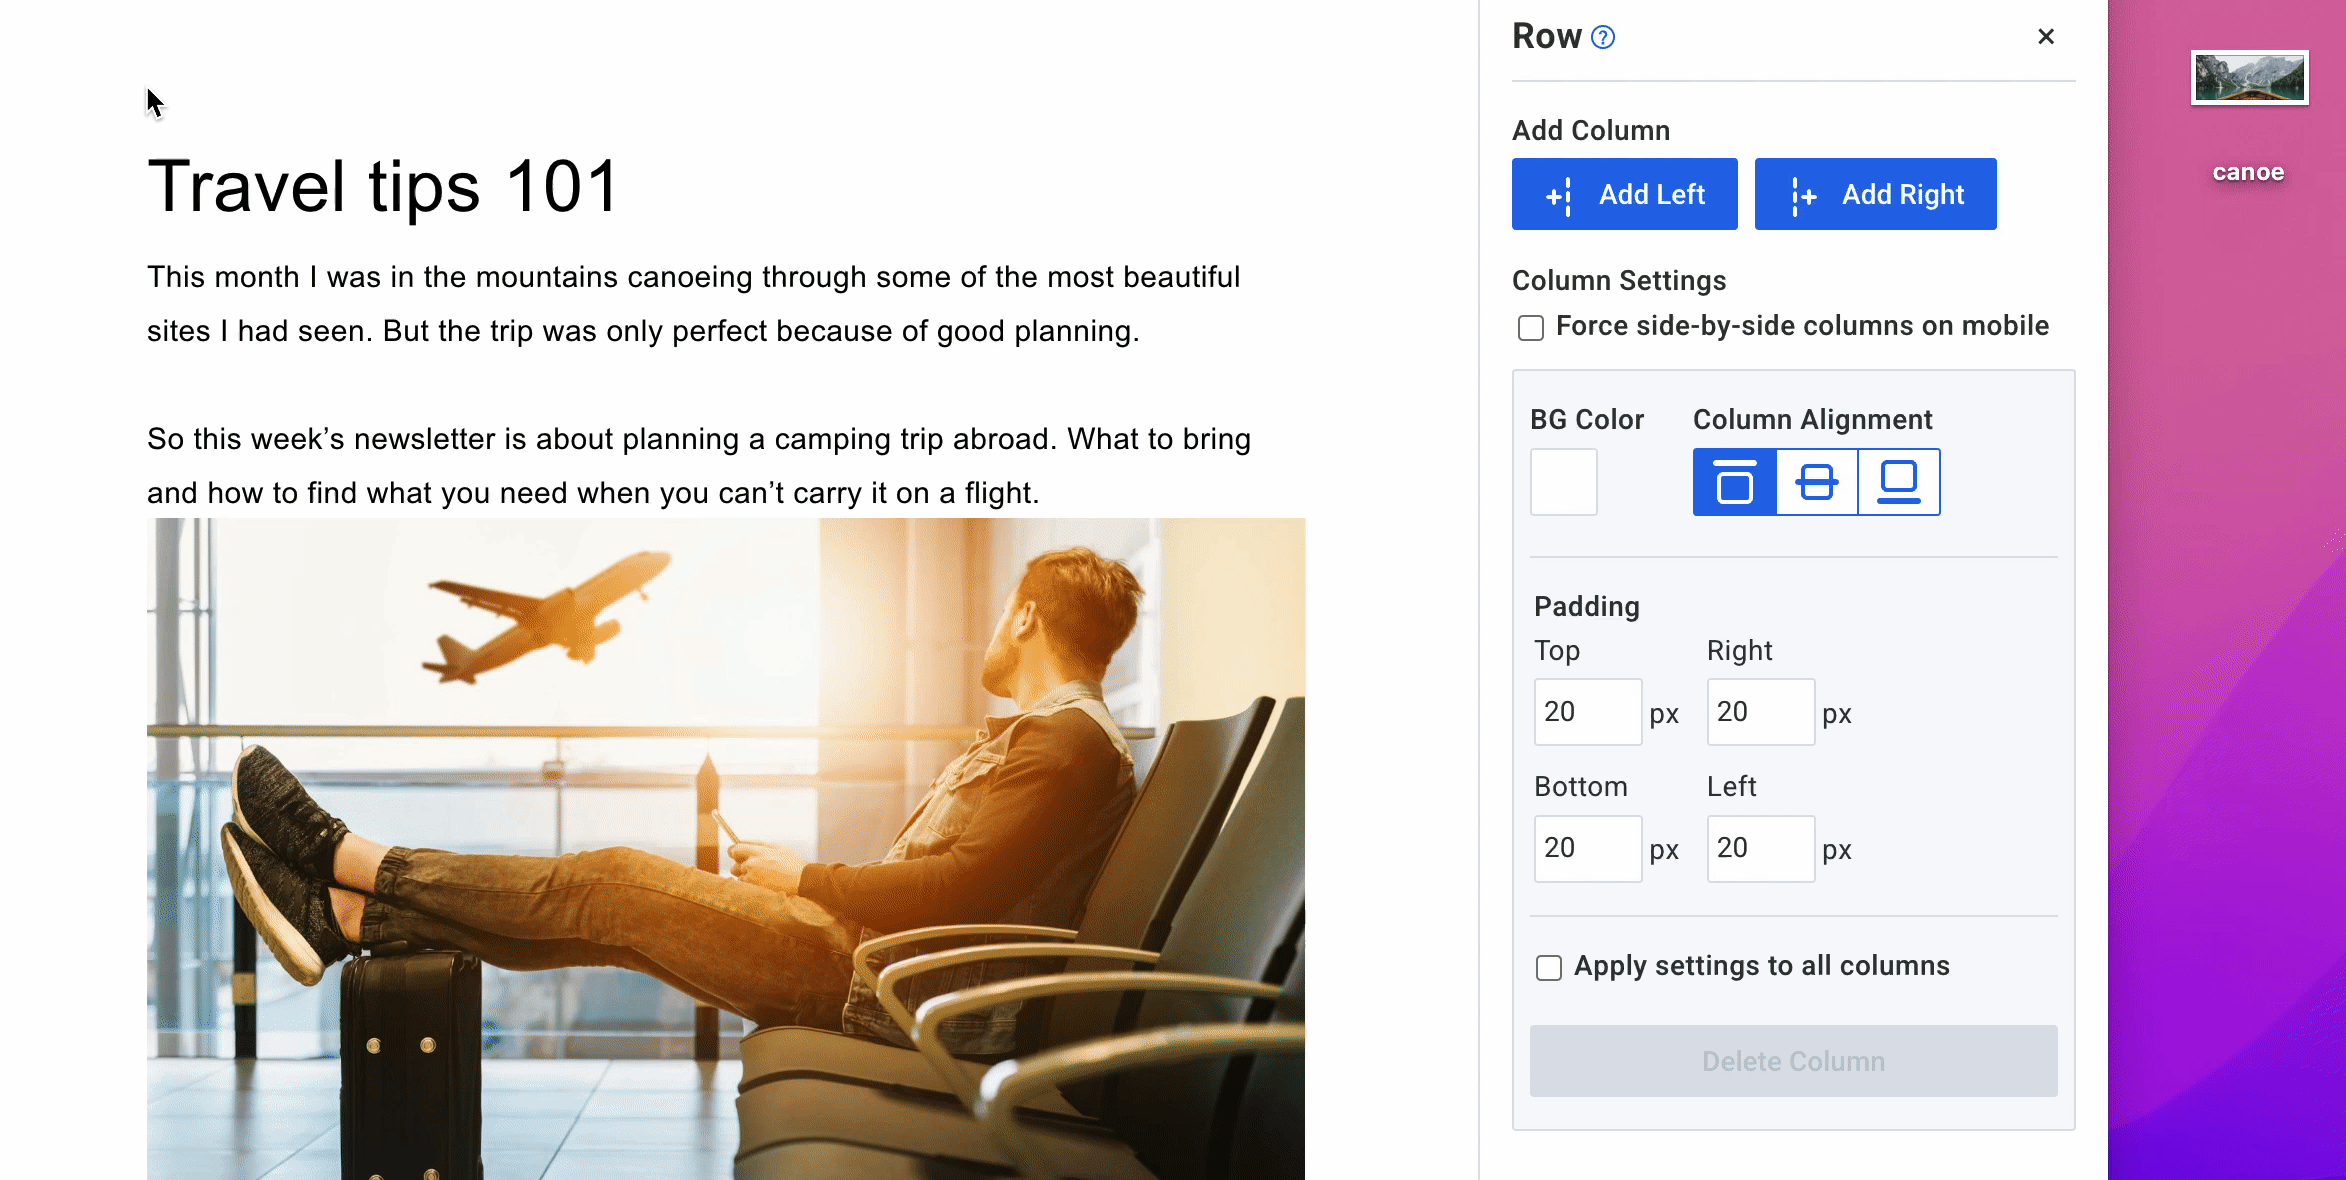 GIF montrant une image d'un canoë glissé dans un e-mail sur le voyage.